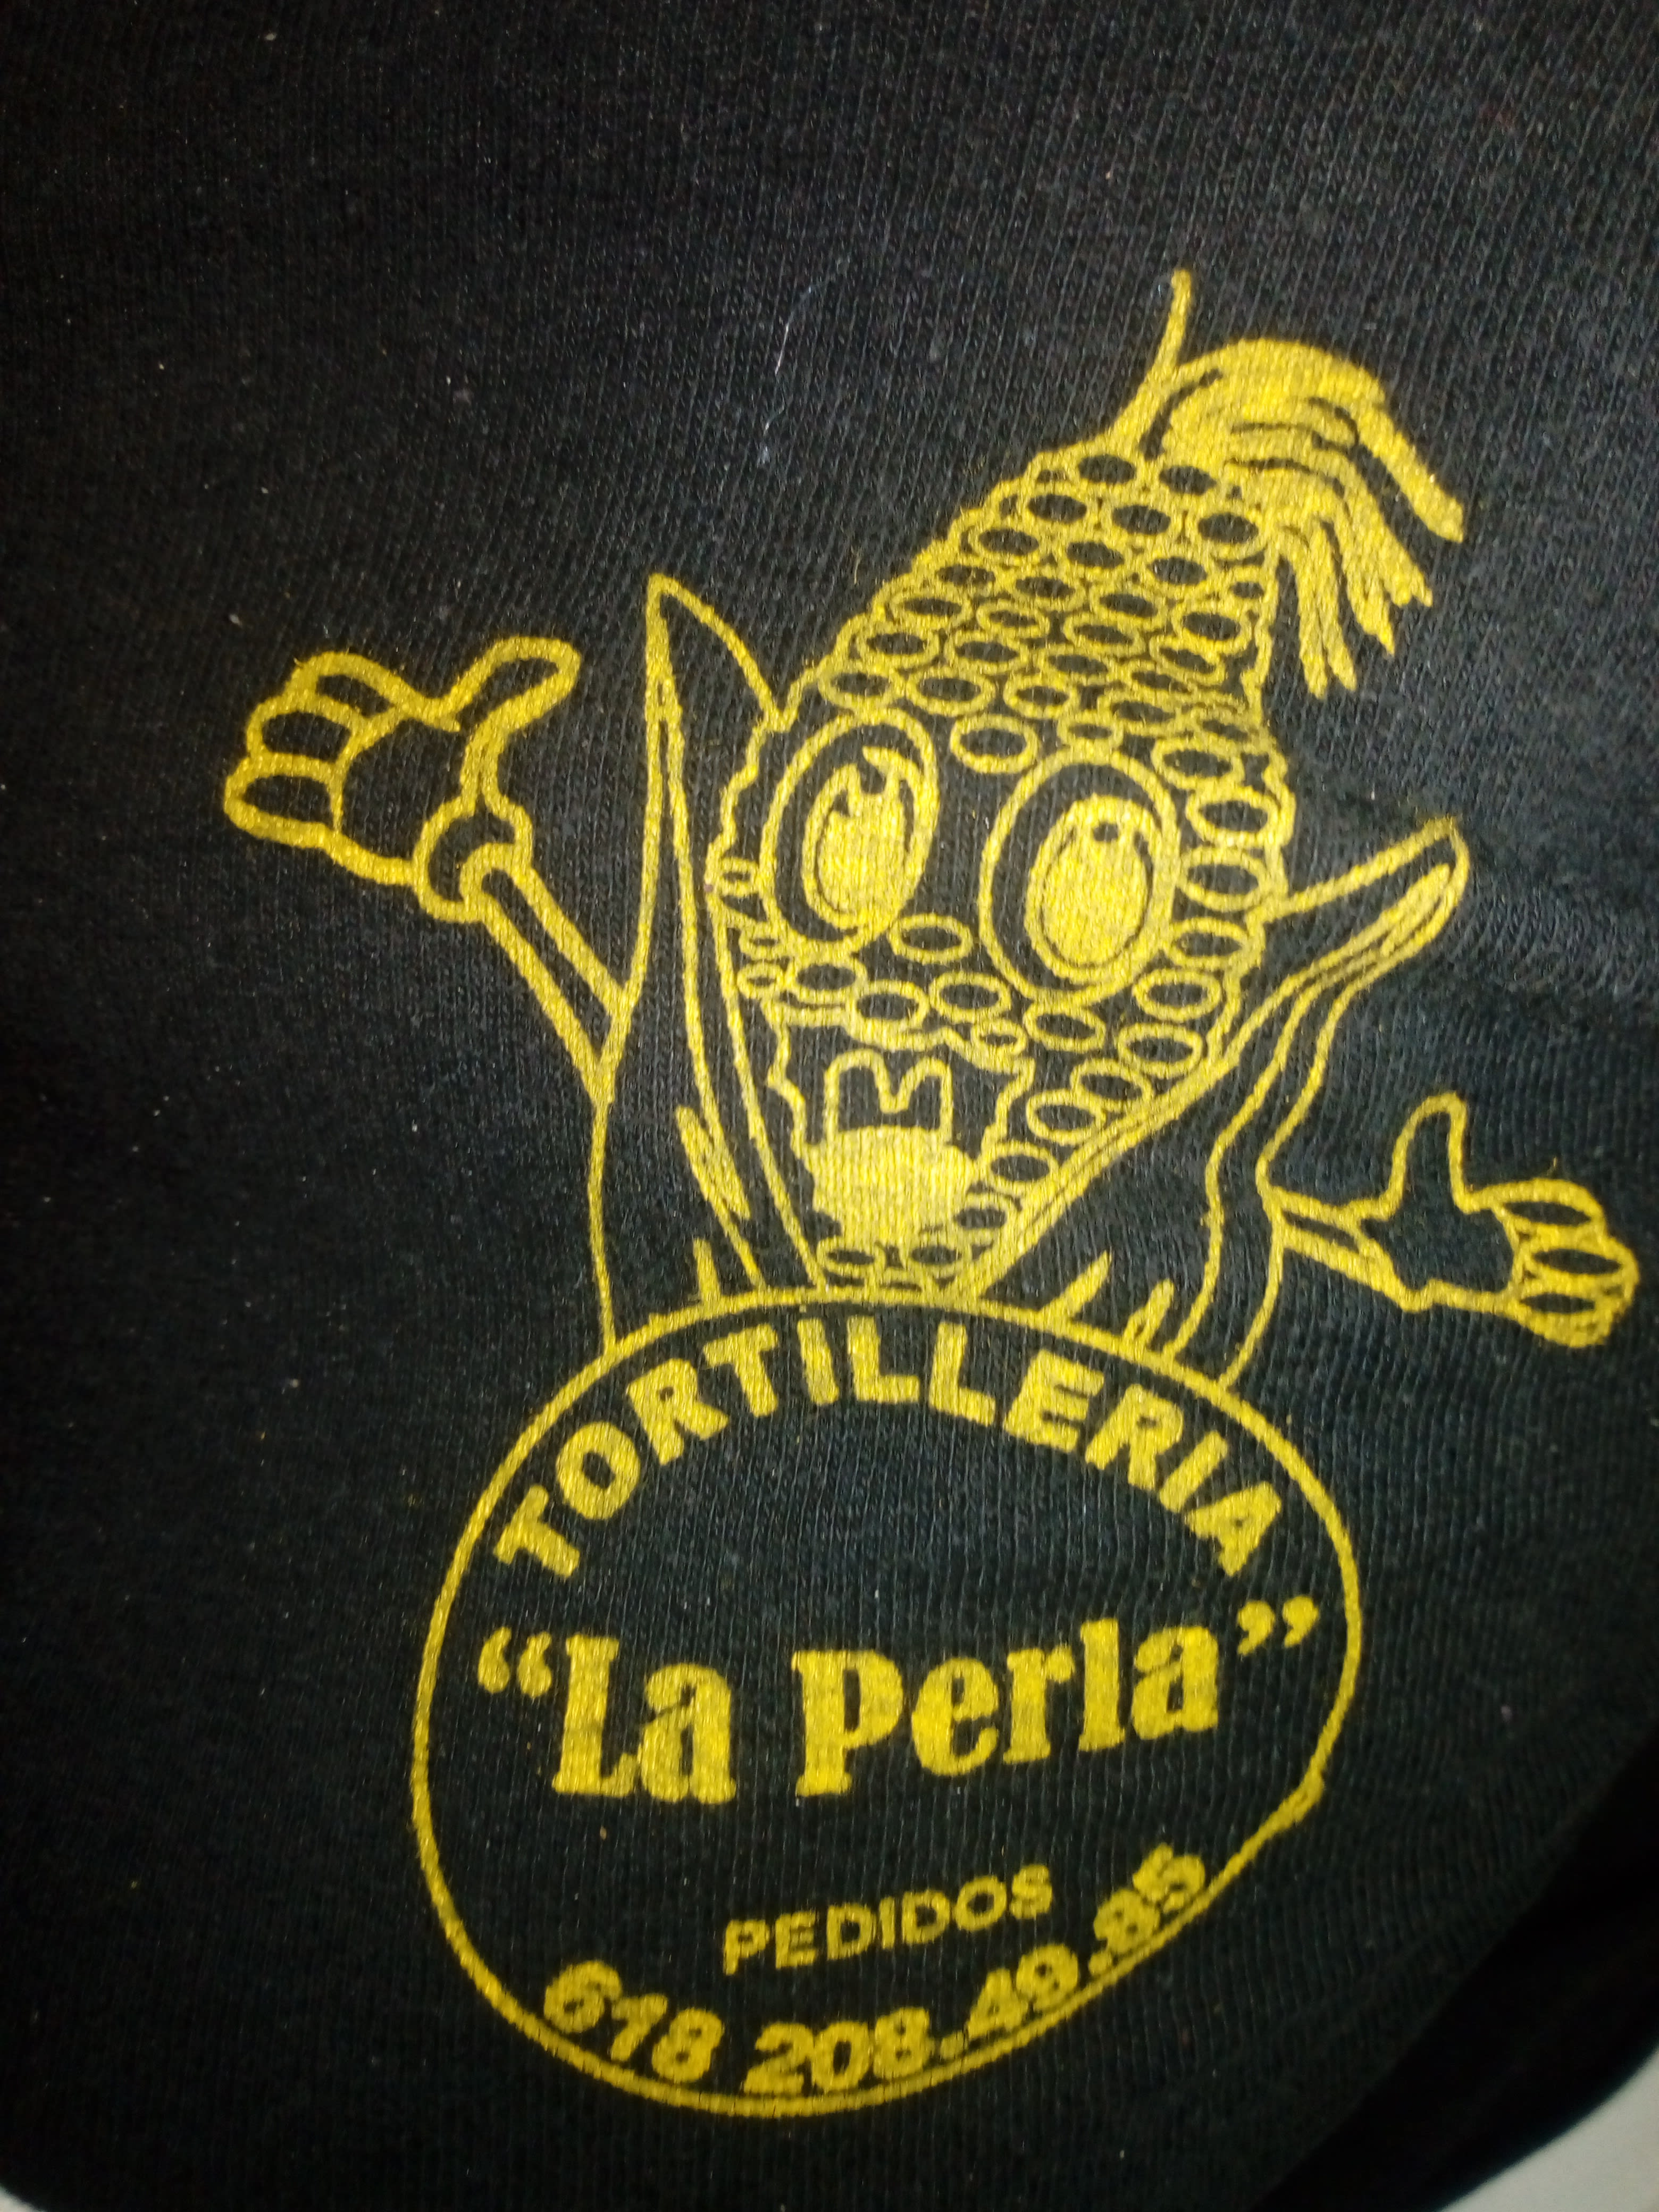 Tortillería "La Perla"